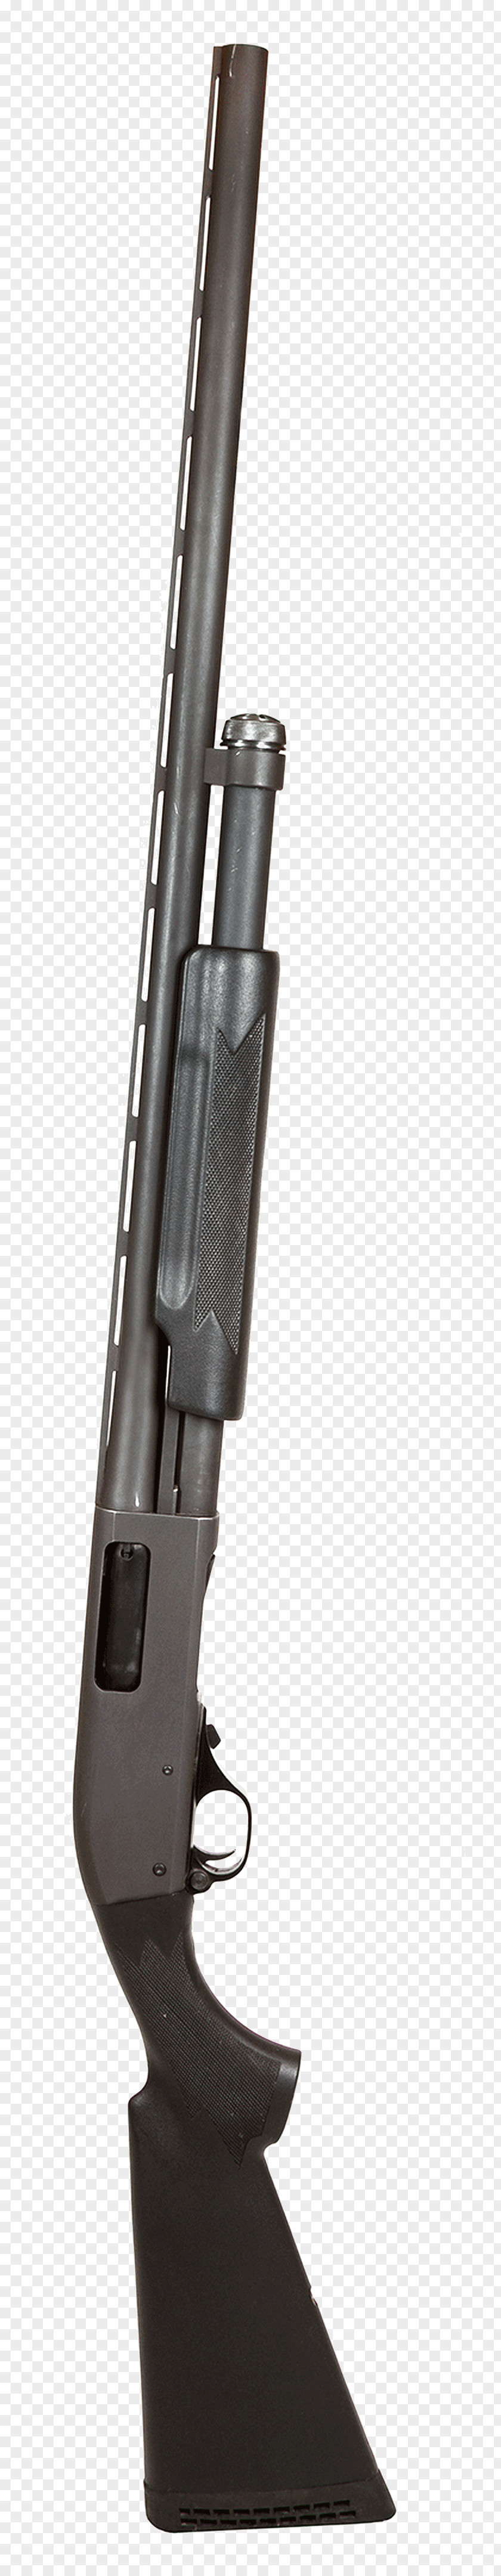 Modernization Shotgun Ranged Weapon Firearm PNG